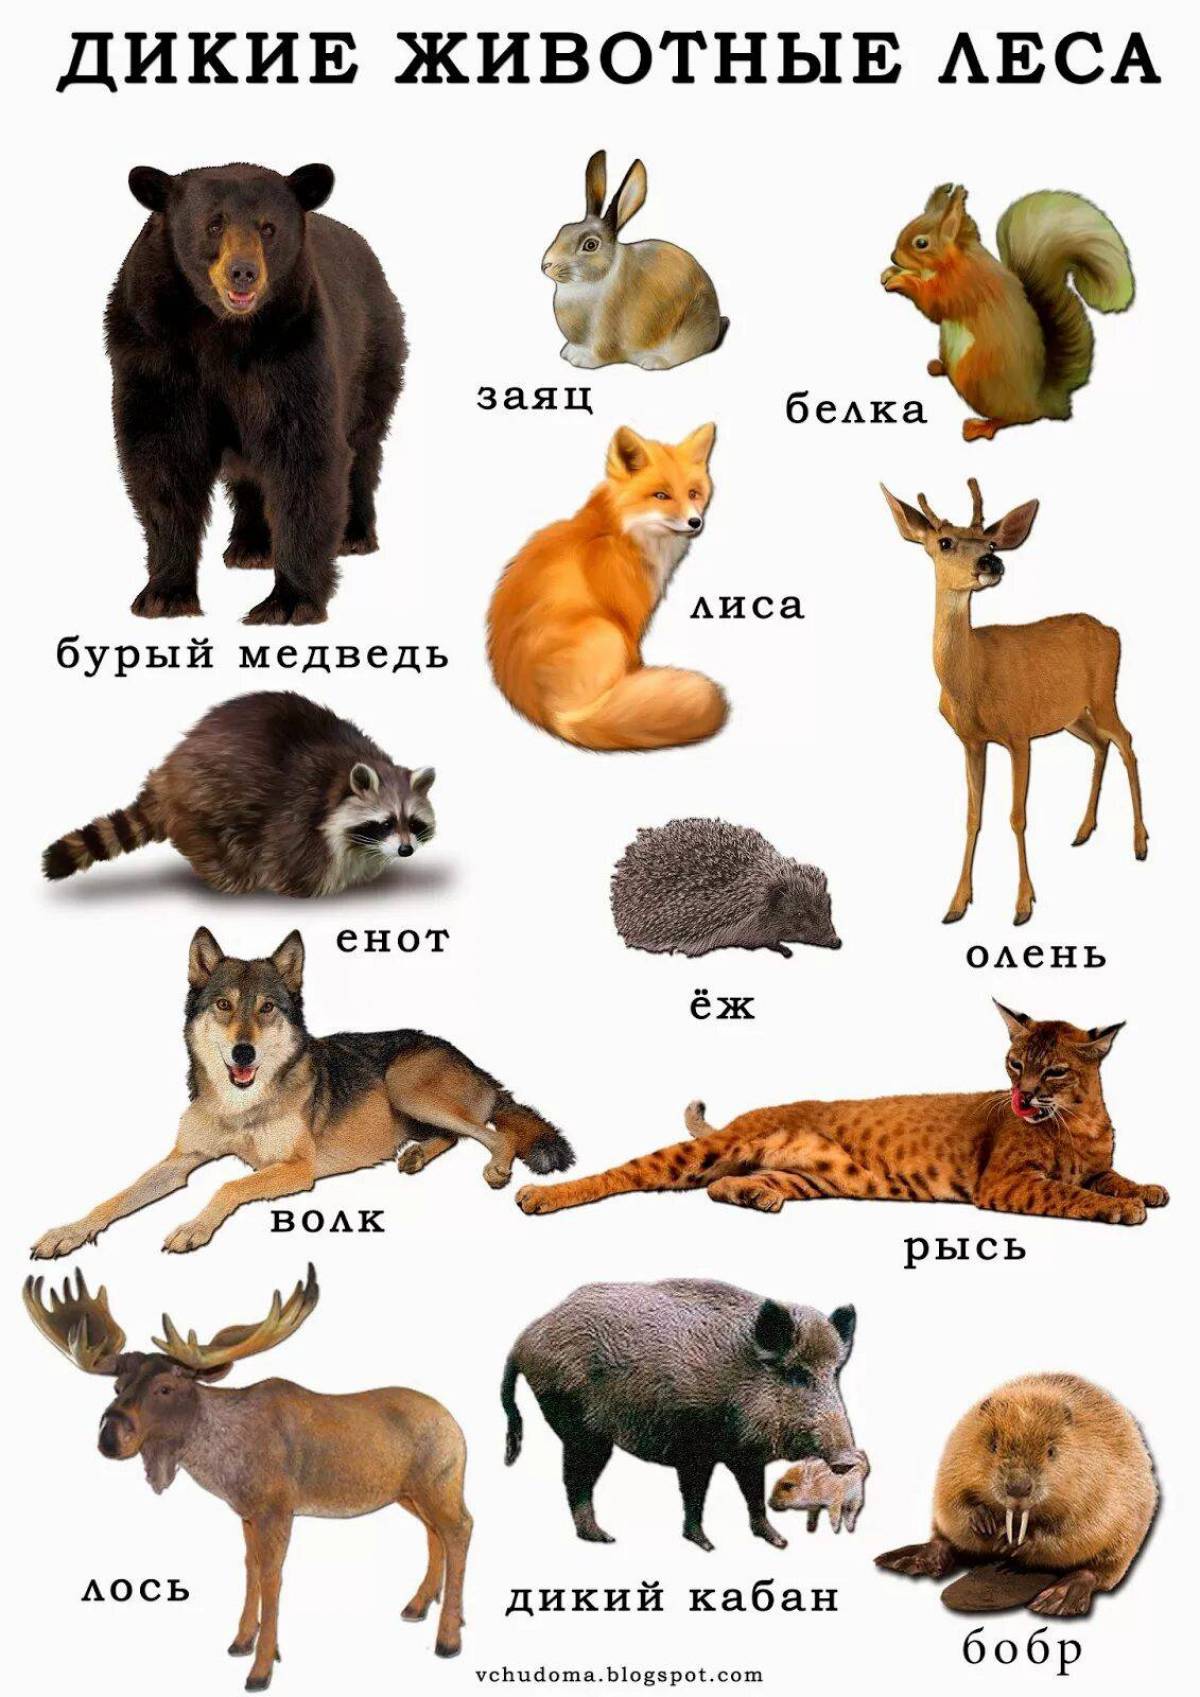 Назови животное на б. Дикие животные для детей. Дикие животные список для детей. Лесные животные для детей. Список лесных животных.